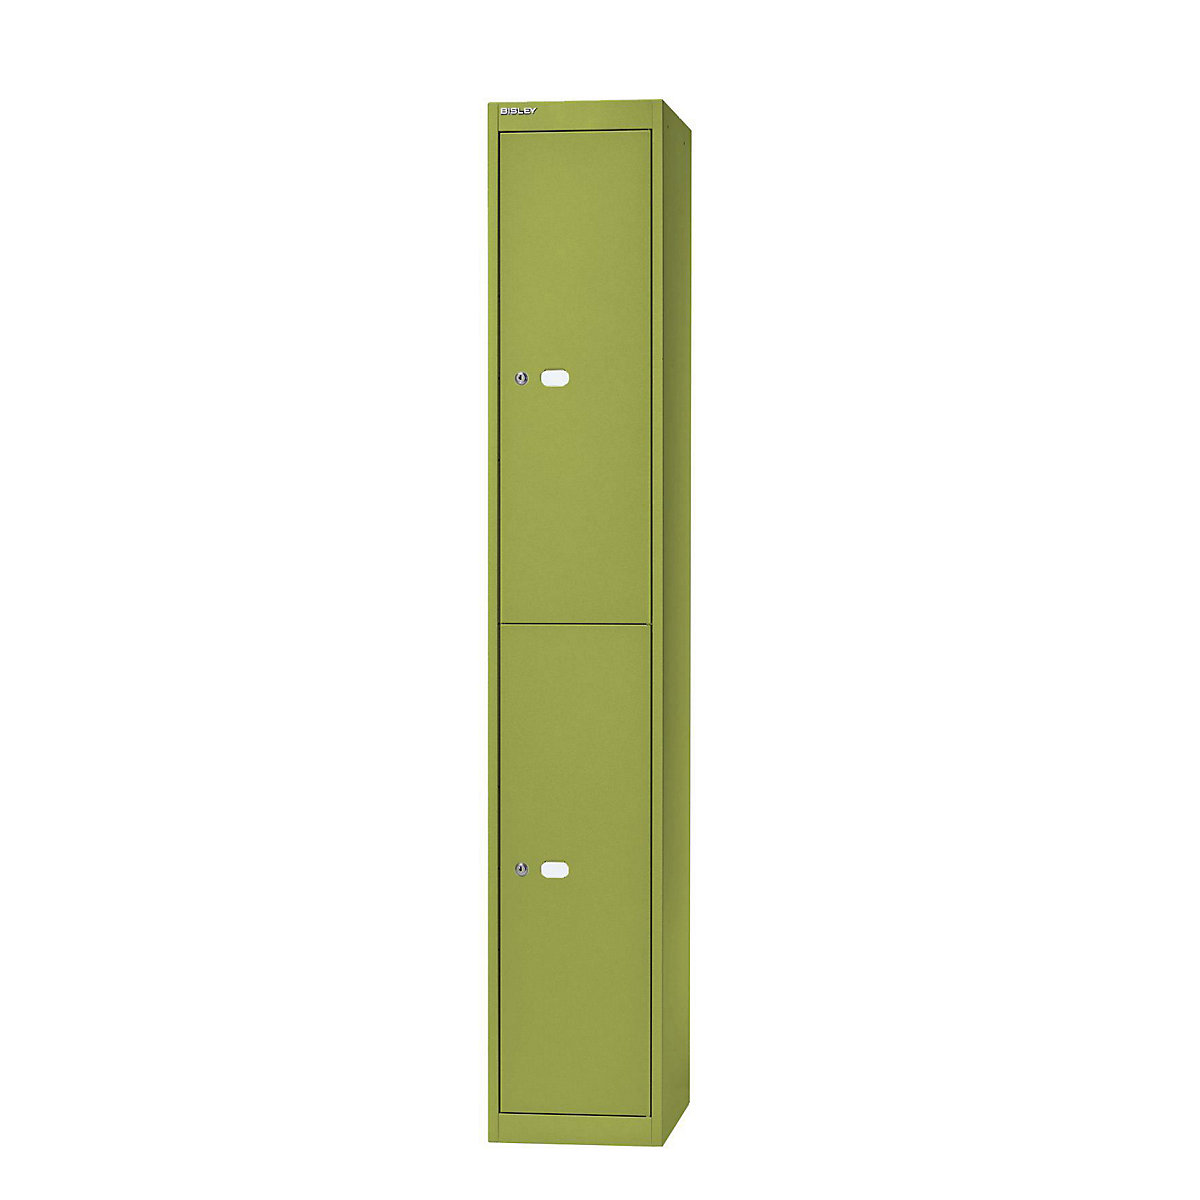 BISLEY OFFICE Garderobensystem, Tiefe 305 mm, 2 Fächer mit je 1 Kleiderhaken, grün